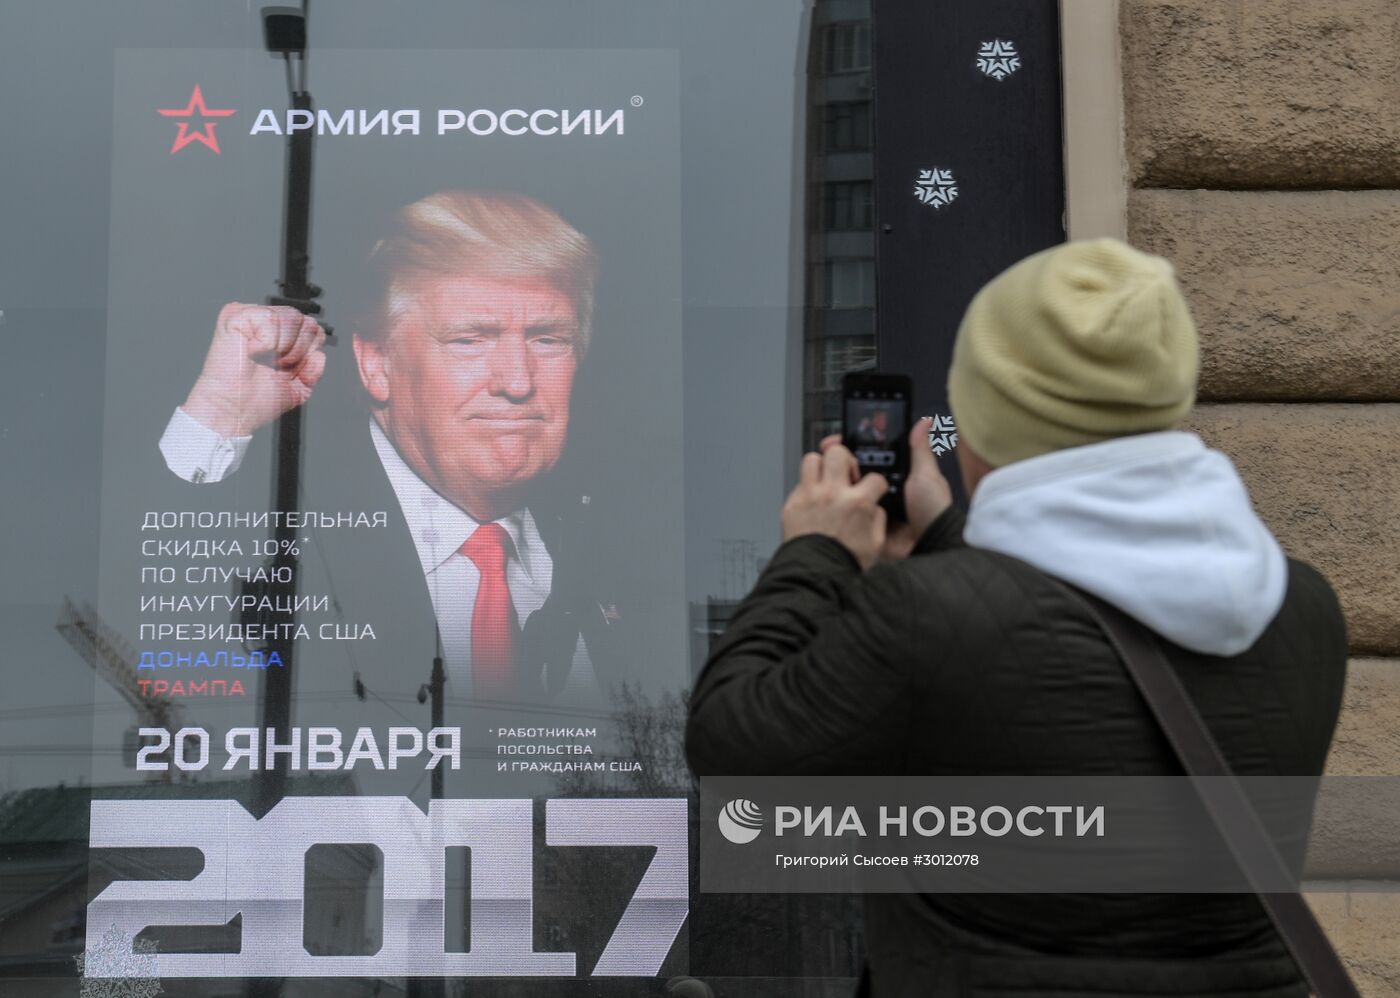 Граждане США получат скидку в магазине "Армия России" в день инаугурации президента США Д.Трампа